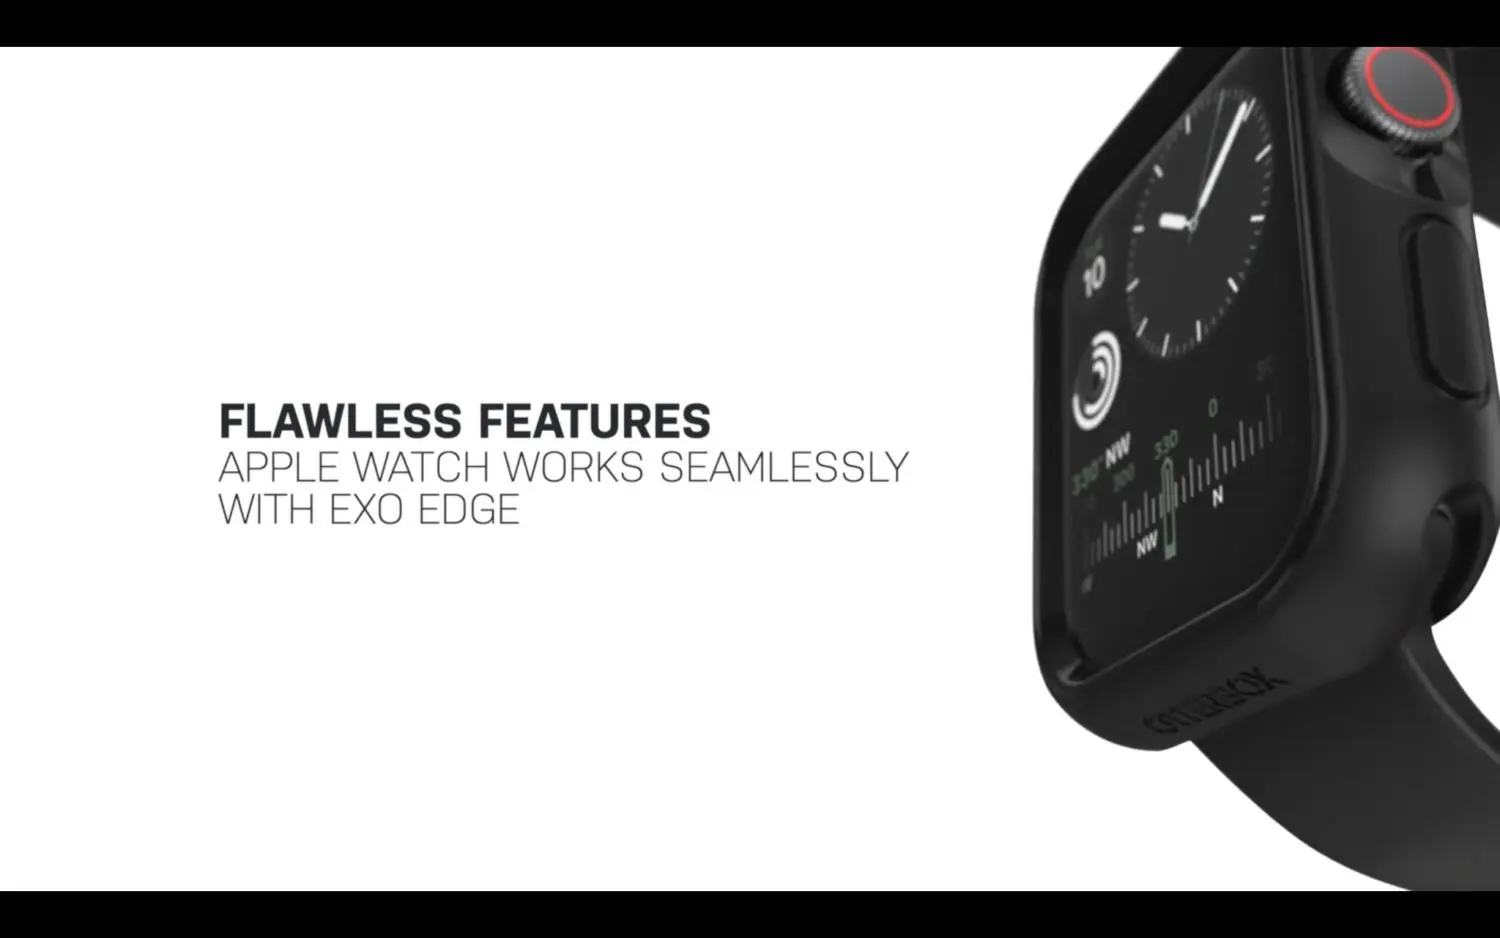 เคส OtterBox รุ่น Exo Edge - Apple Watch Series 6/SE/5/4 (40mm) - Bright Sun